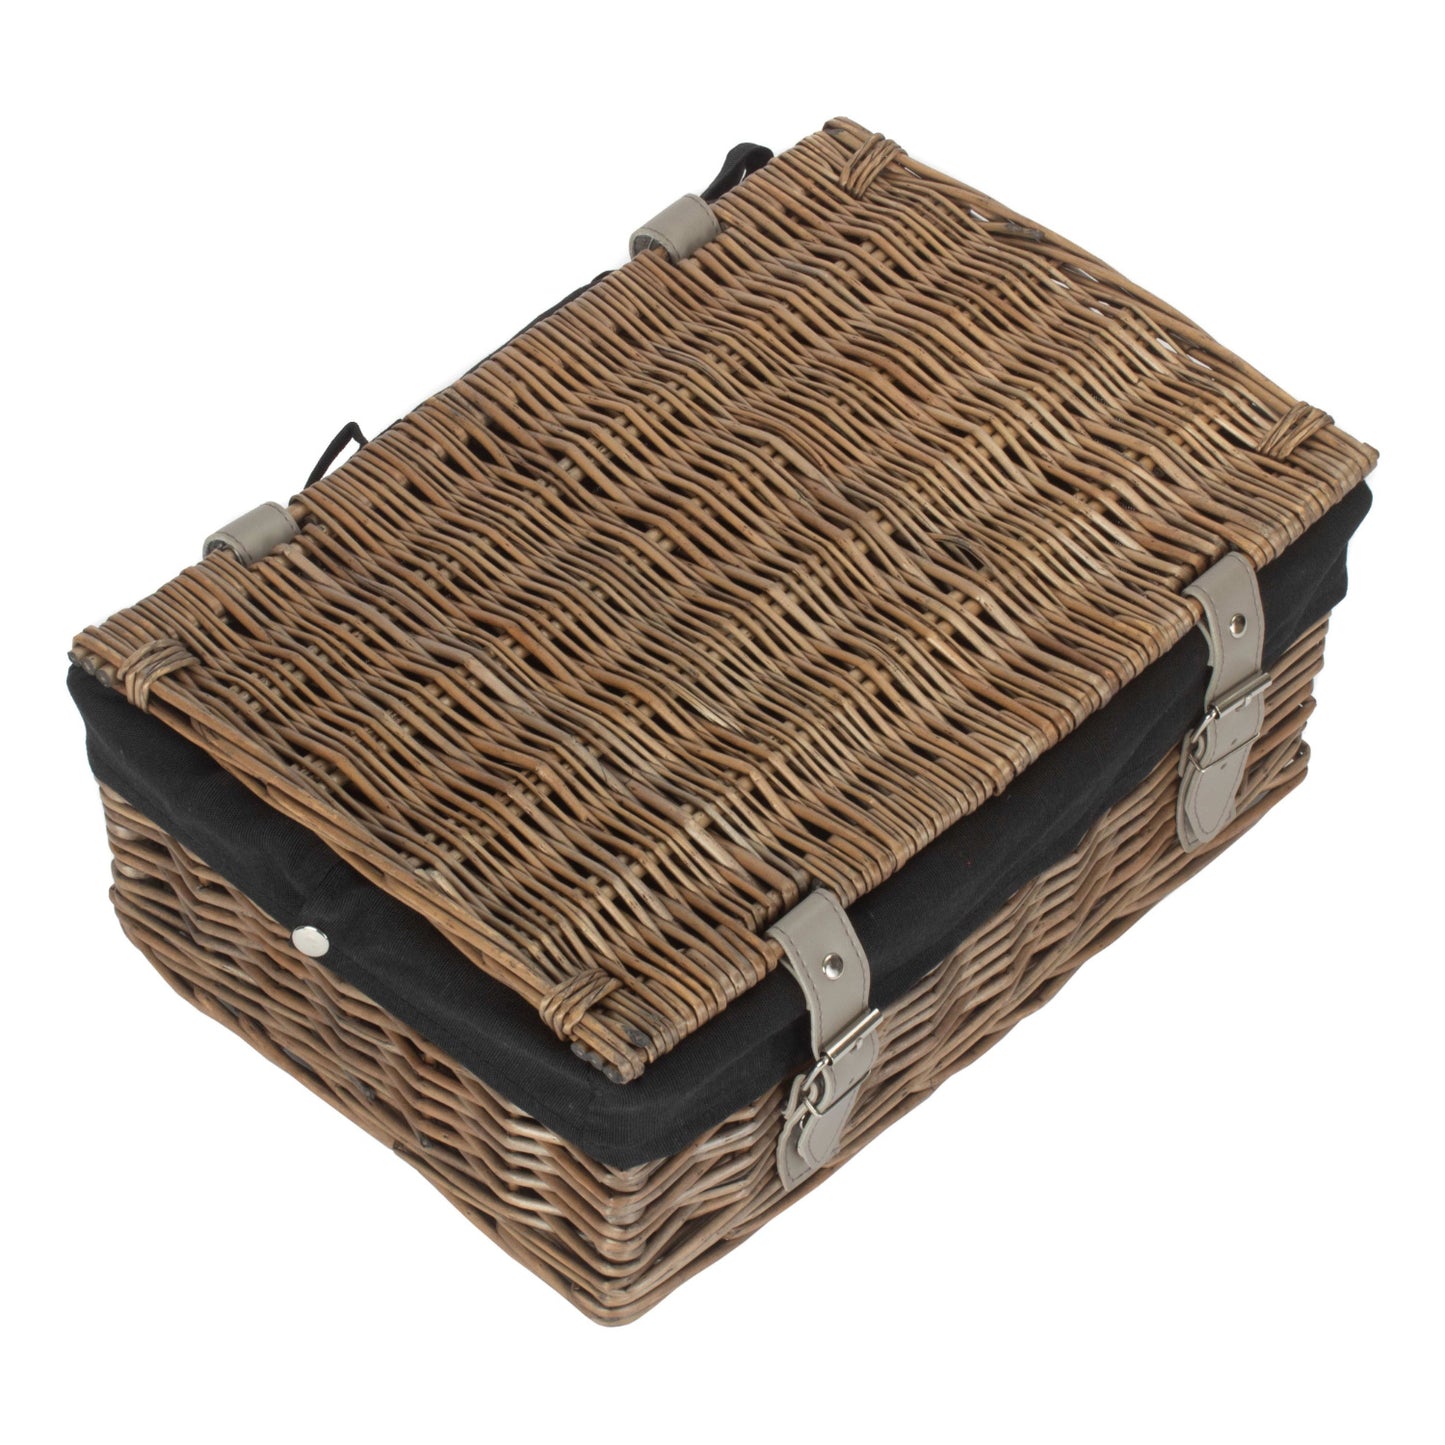 14 Inch Empty Wicker Hamper Basket - Antique Wash - Black Lining